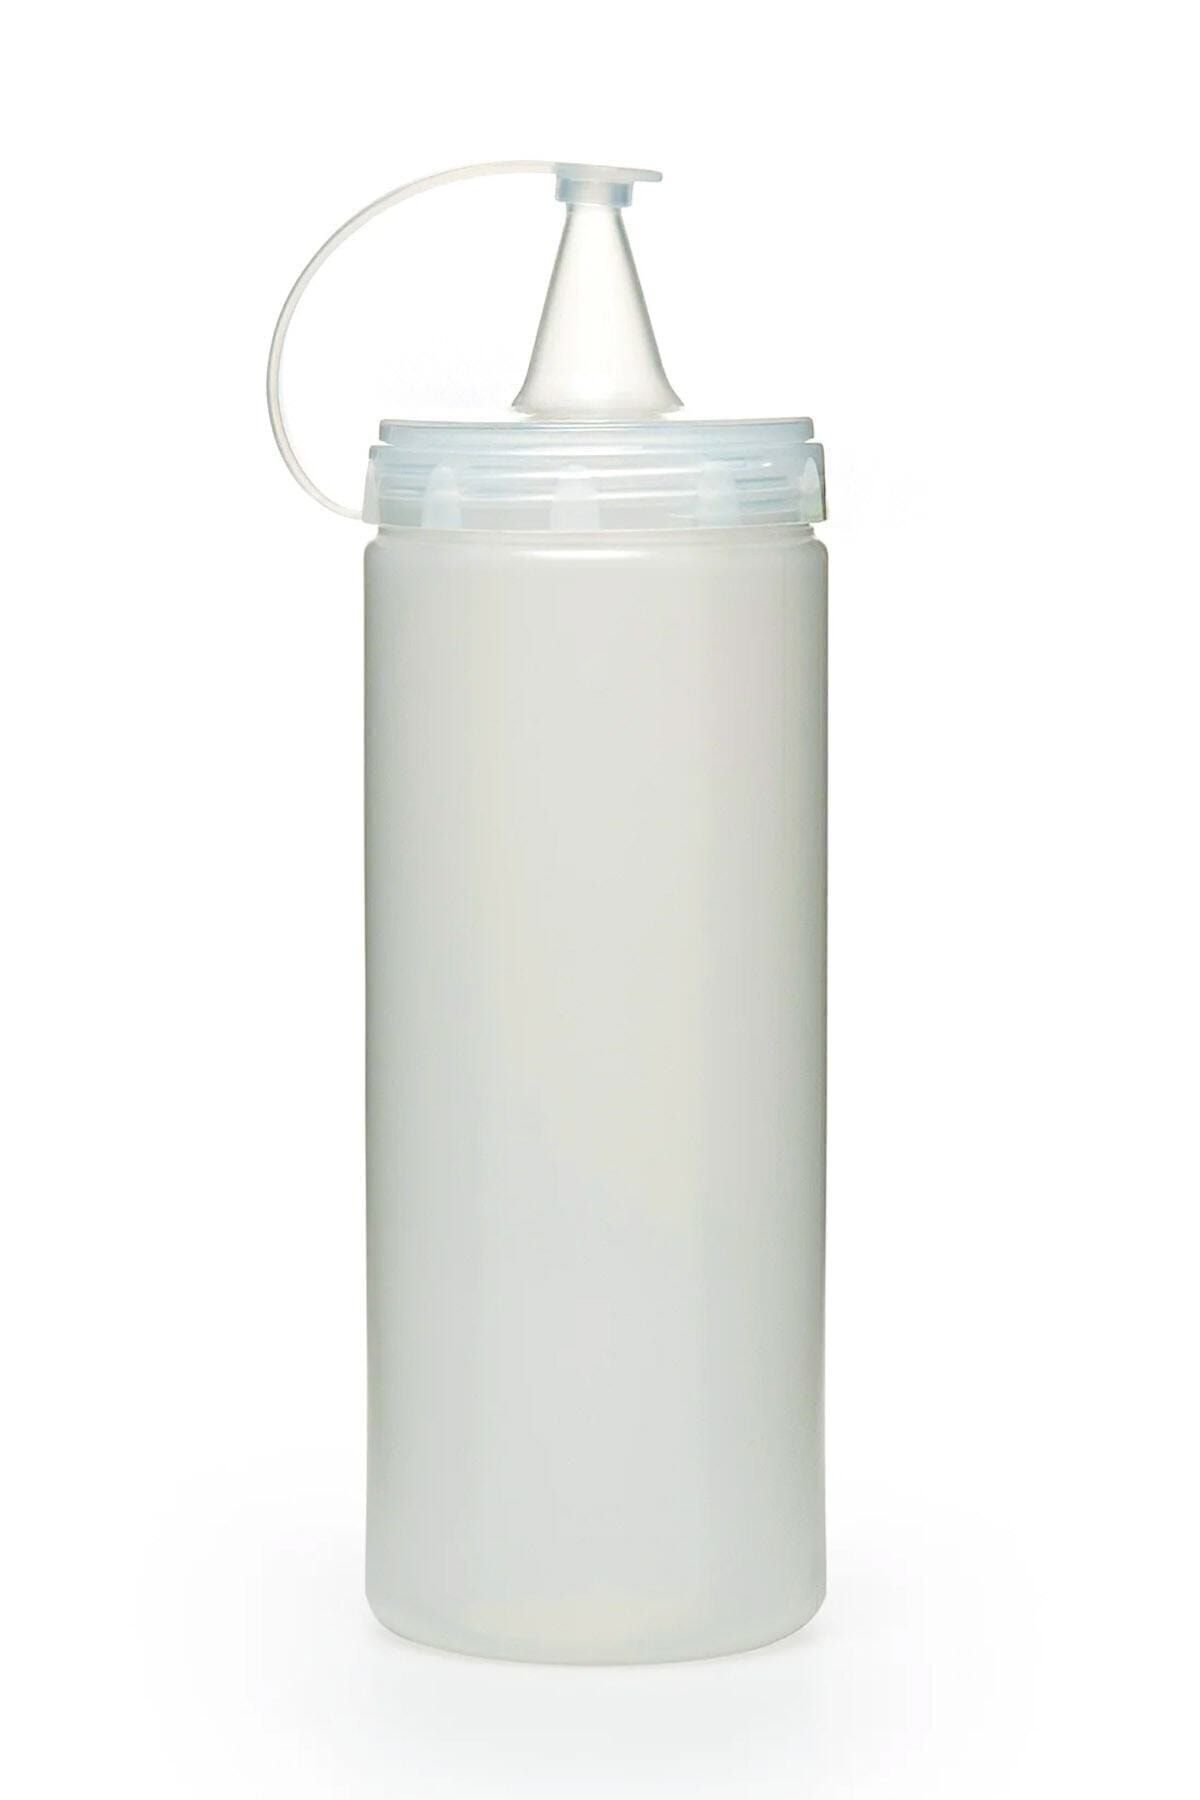 TUT & AL home 3 Adet Sızdırmaz Kapaklı Plastik Yağ Şişesi Ve Sos Şişesi 700 ml